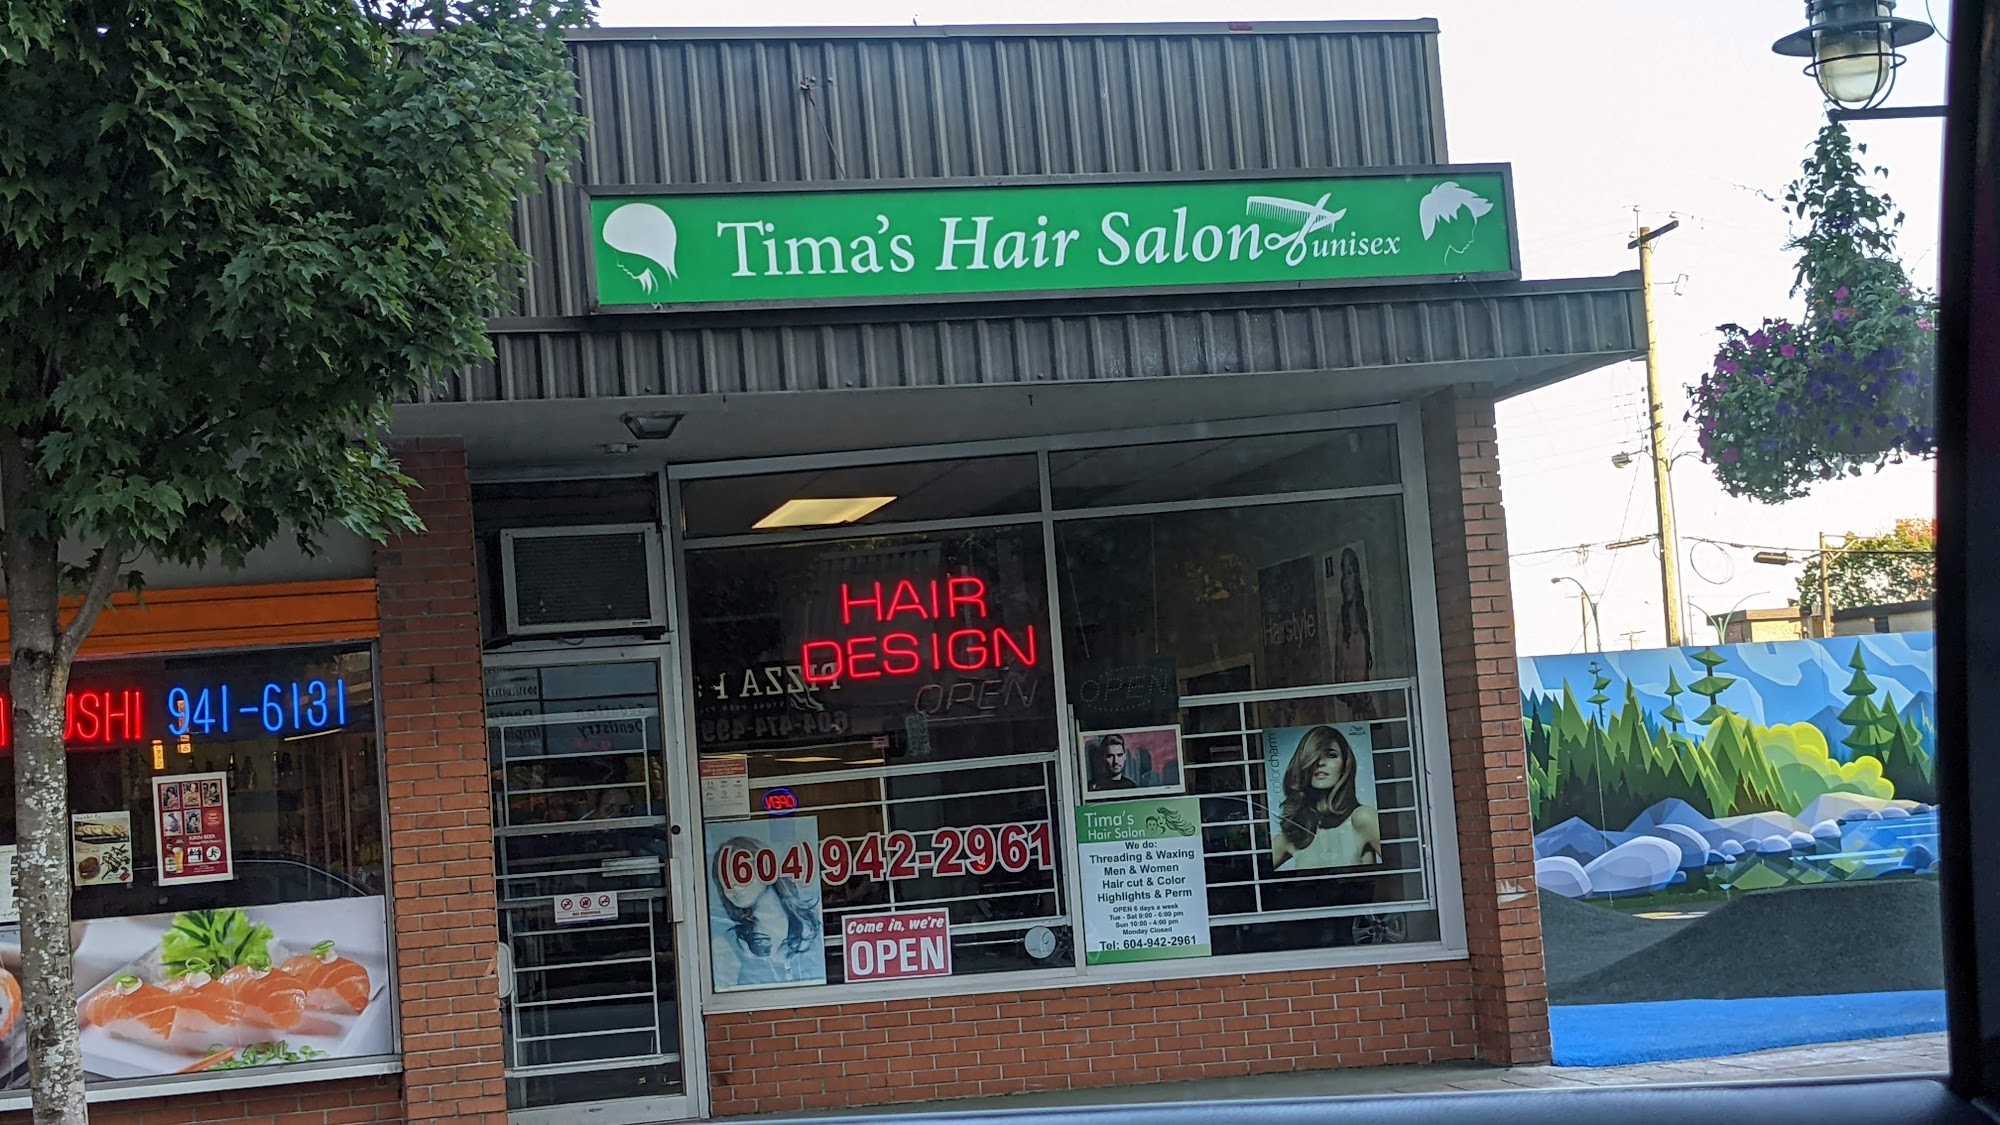 Tima's Hair Salon